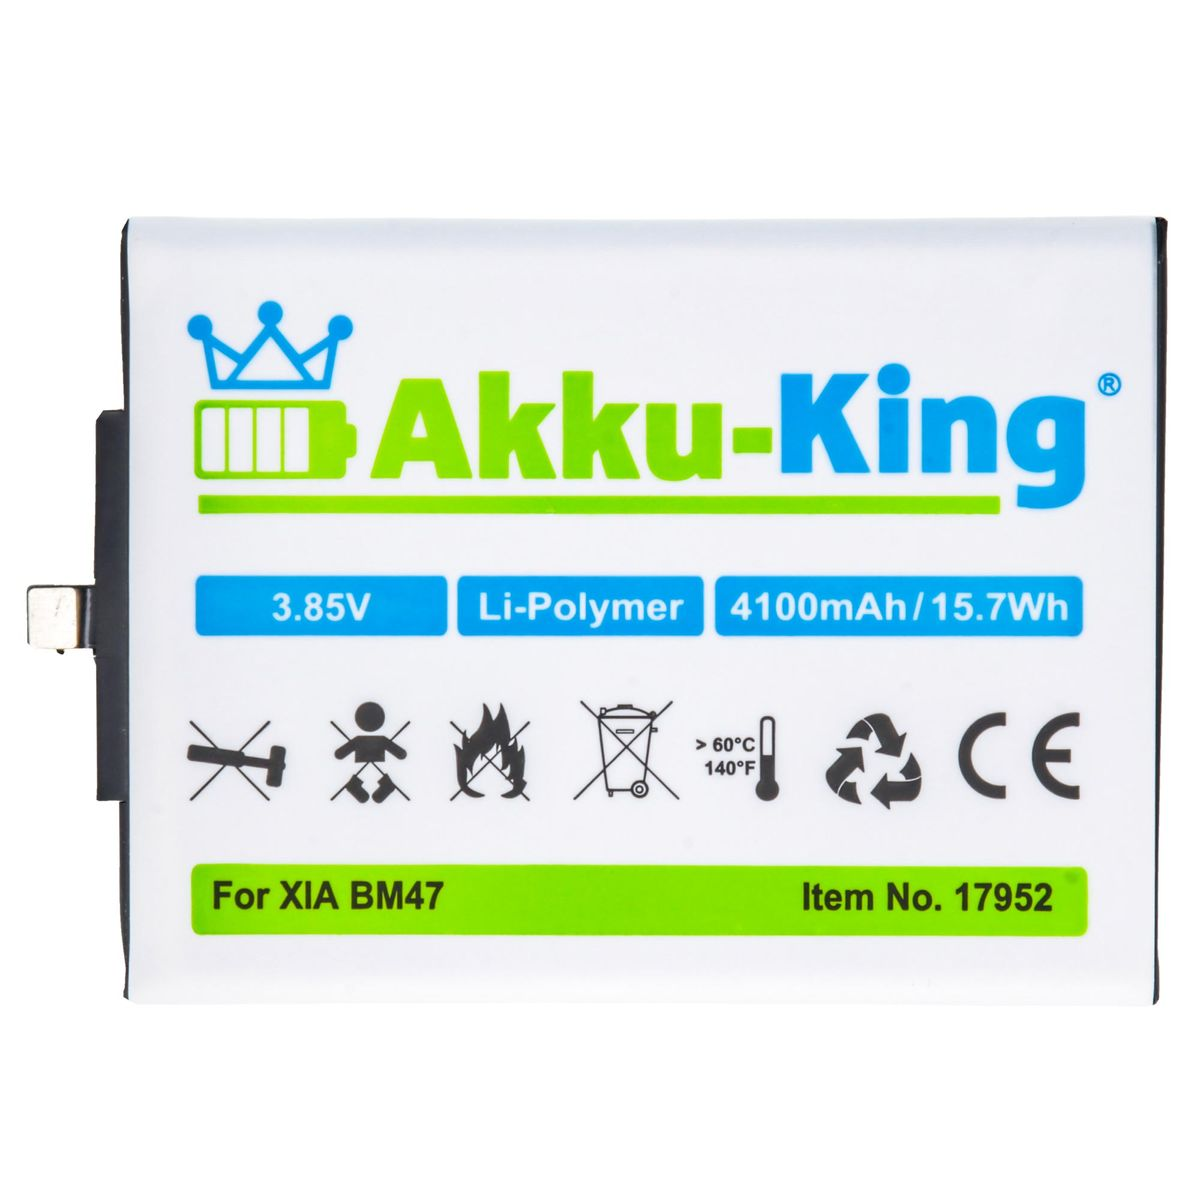 BM47 Xiaomi kompatibel 3.85 AKKU-KING Handy-Akku, Li-Polymer Akku Volt, mit 4100mAh